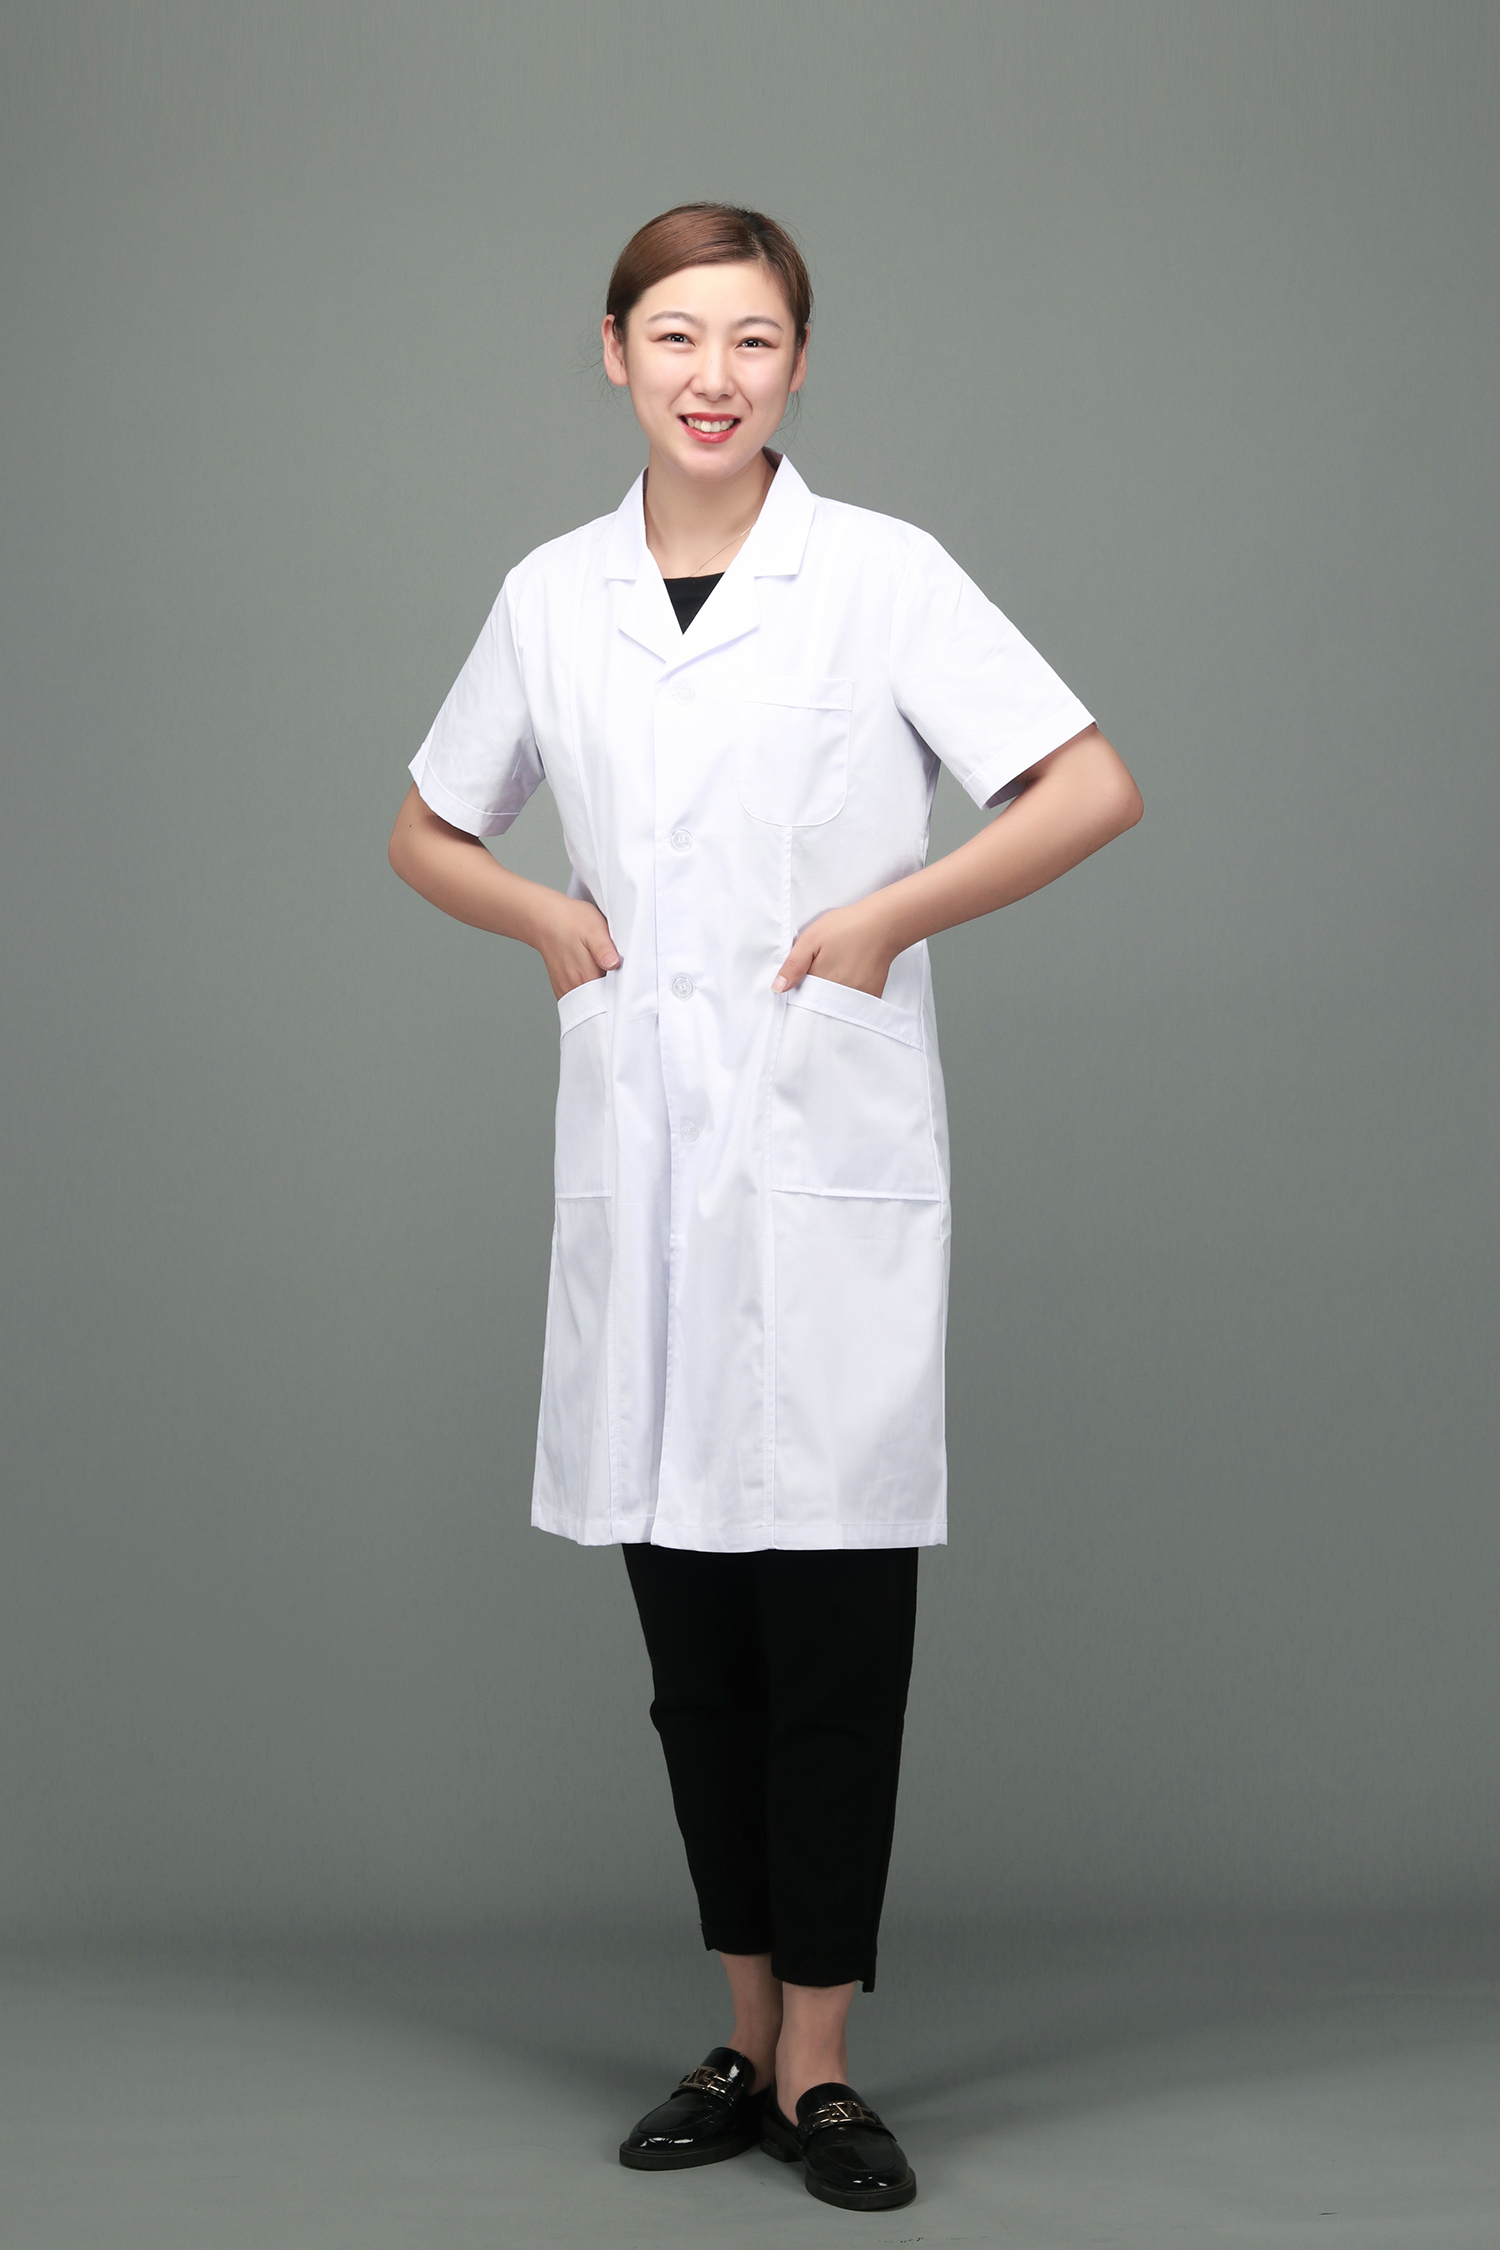 「图」白大褂短袖 白大褂长袖女白大褂短袖实验服医生短袖医用护士服图片-马可波罗网